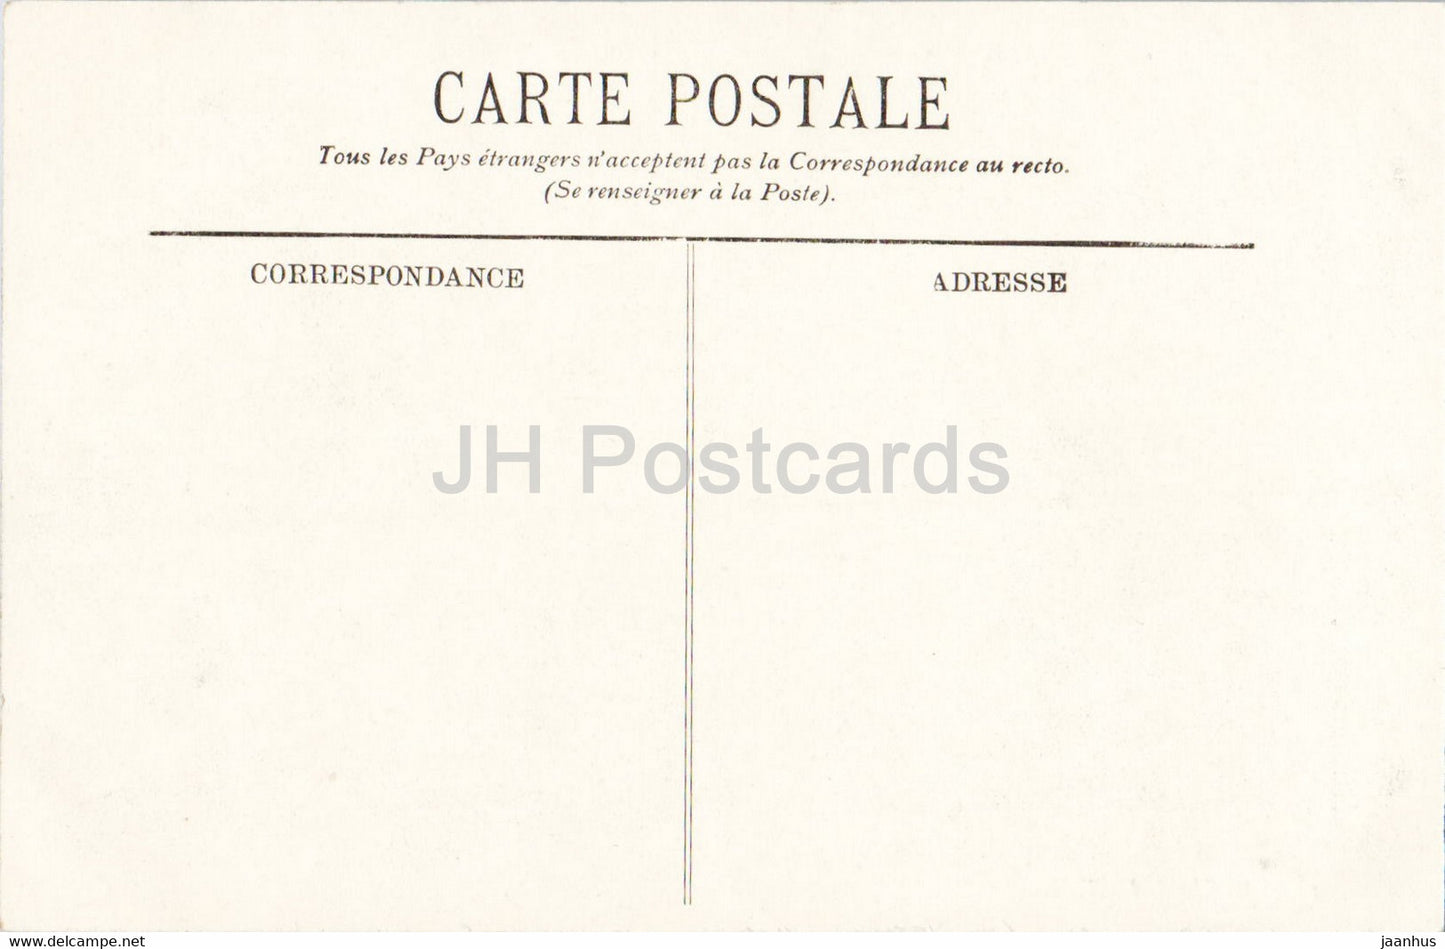 Pau - La Vallée du Gave et le Pont du Chemin de fer - pont - 12 - carte postale ancienne - France - inutilisée